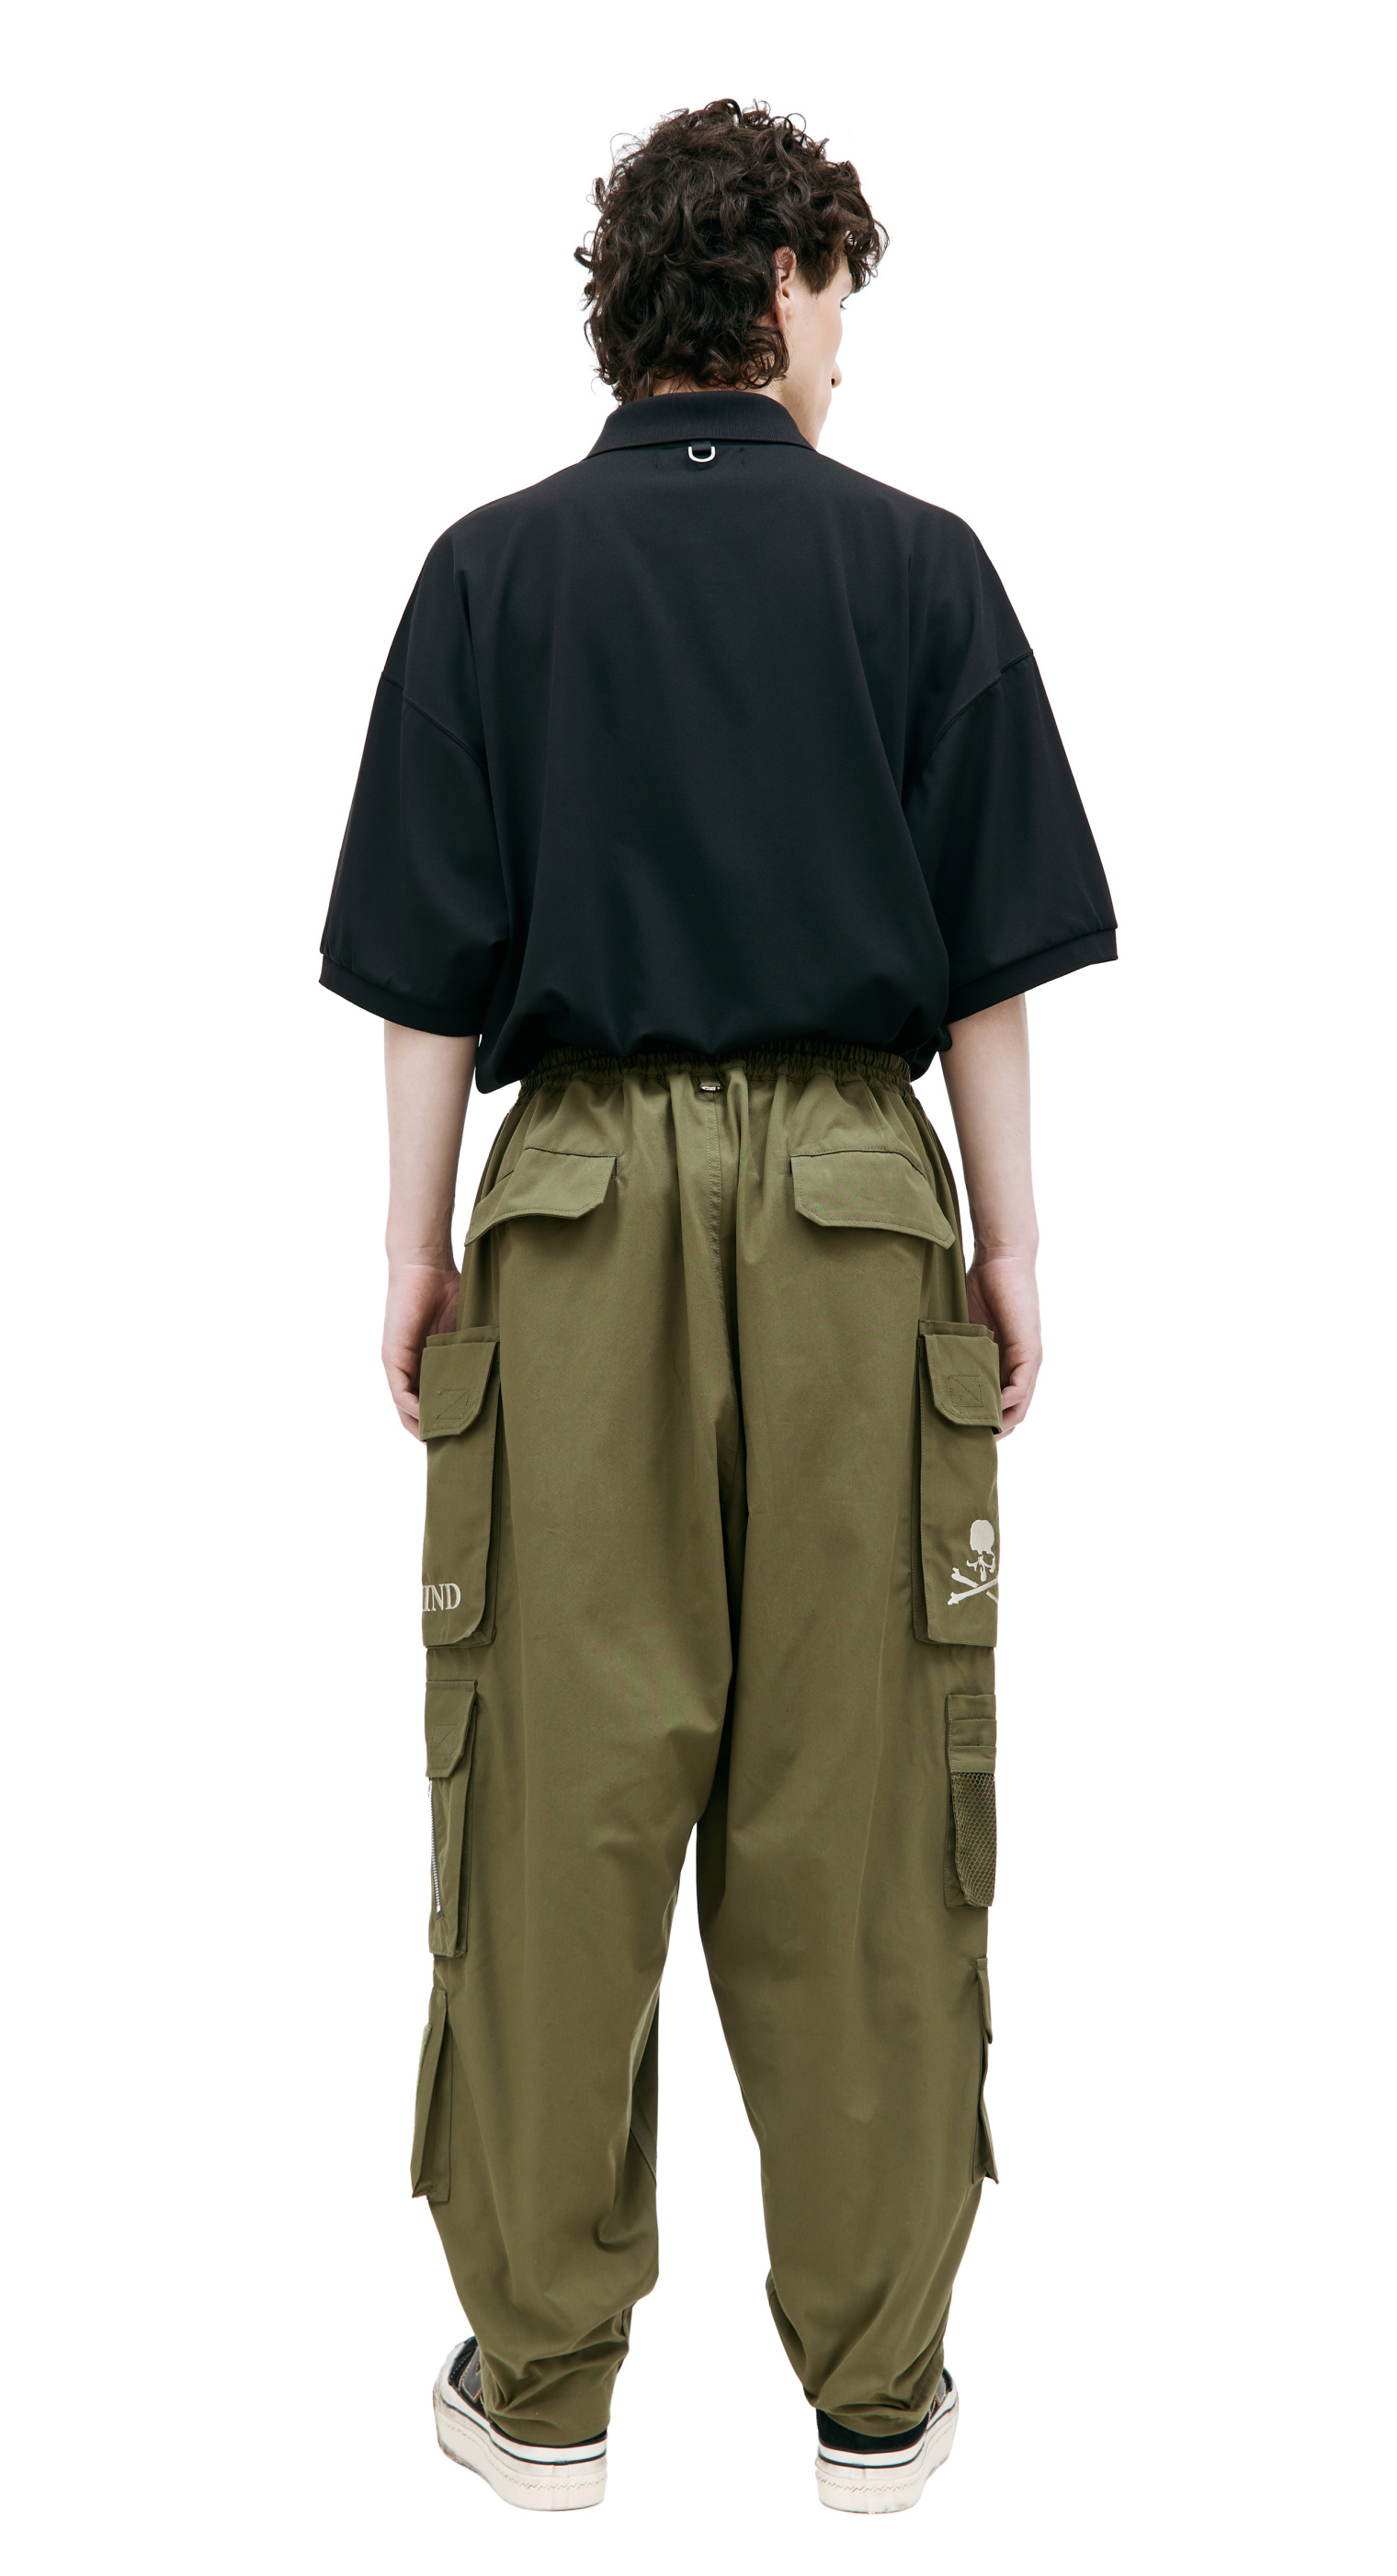 Mastermind WORLD Khaki cargo trousers